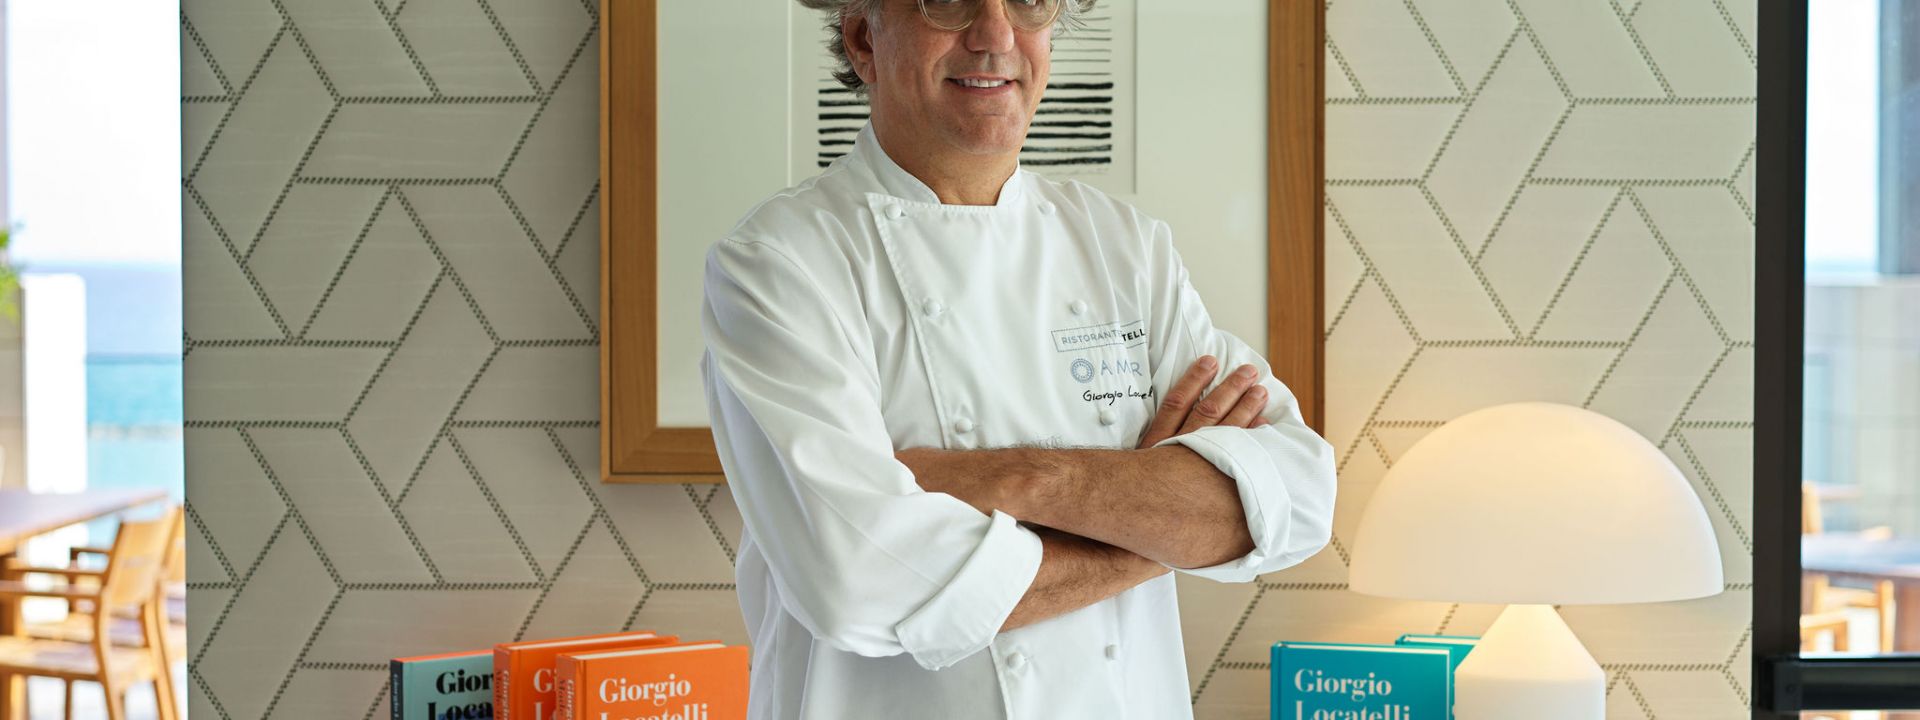 Discover the White Truffle Menu with Chef Locatelli